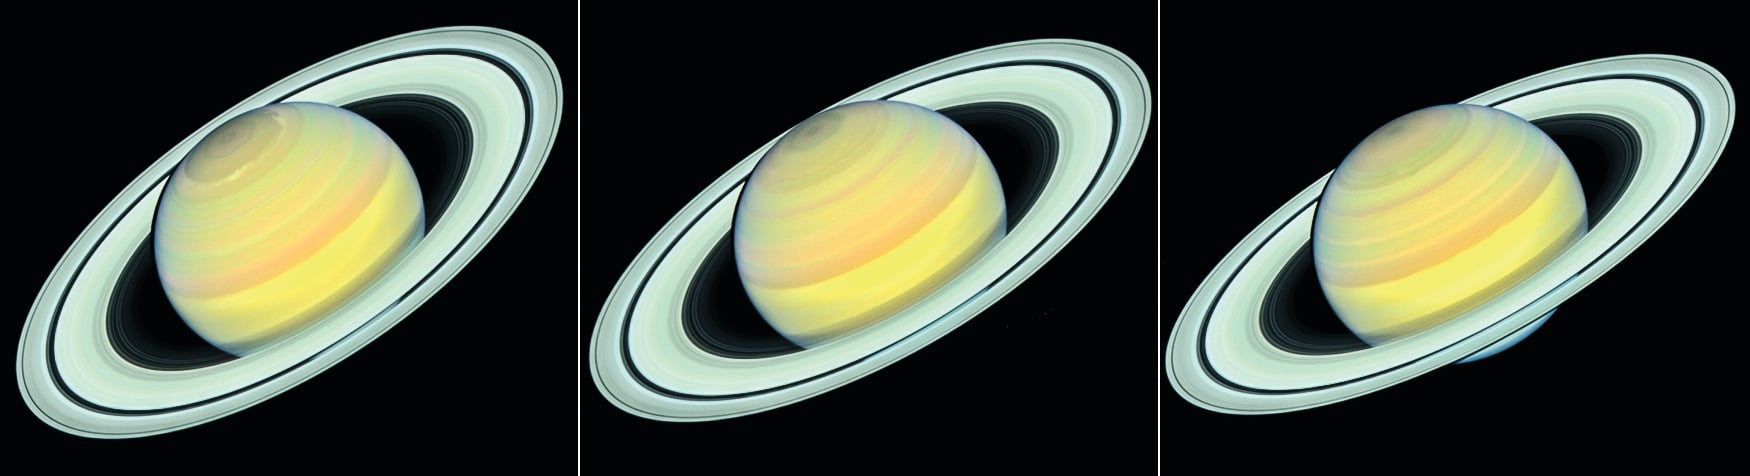 哈勃望遠鏡目睹土星變色